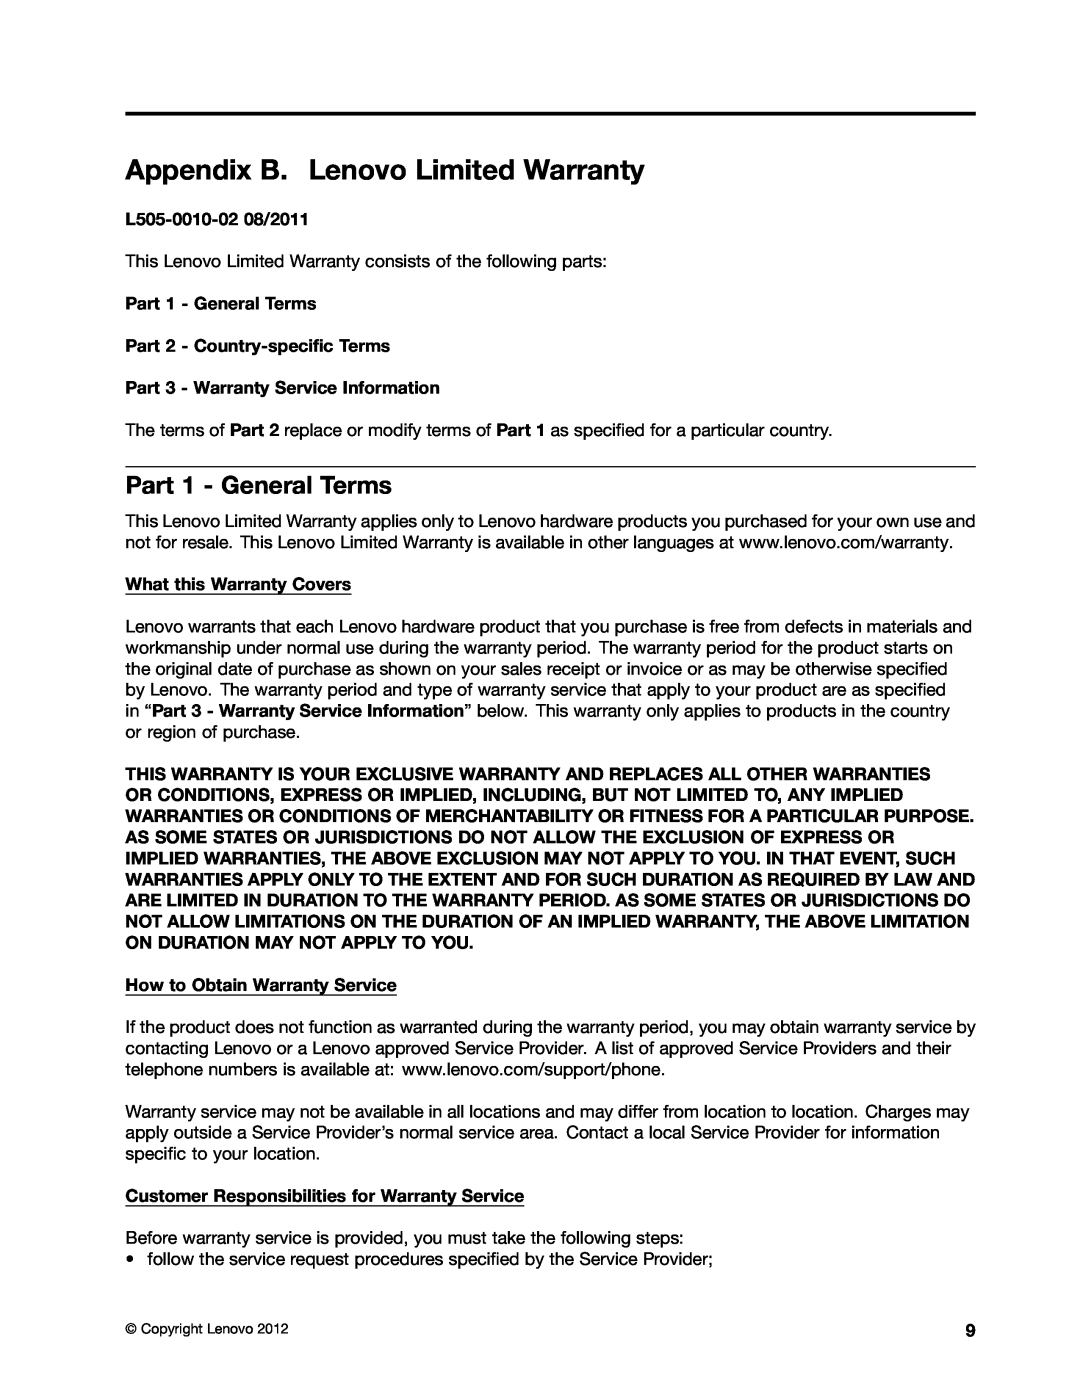 Lenovo GOBI 4000 manual Appendix B. Lenovo Limited Warranty, Part 1 - General Terms, L505-0010-02 08/2011 